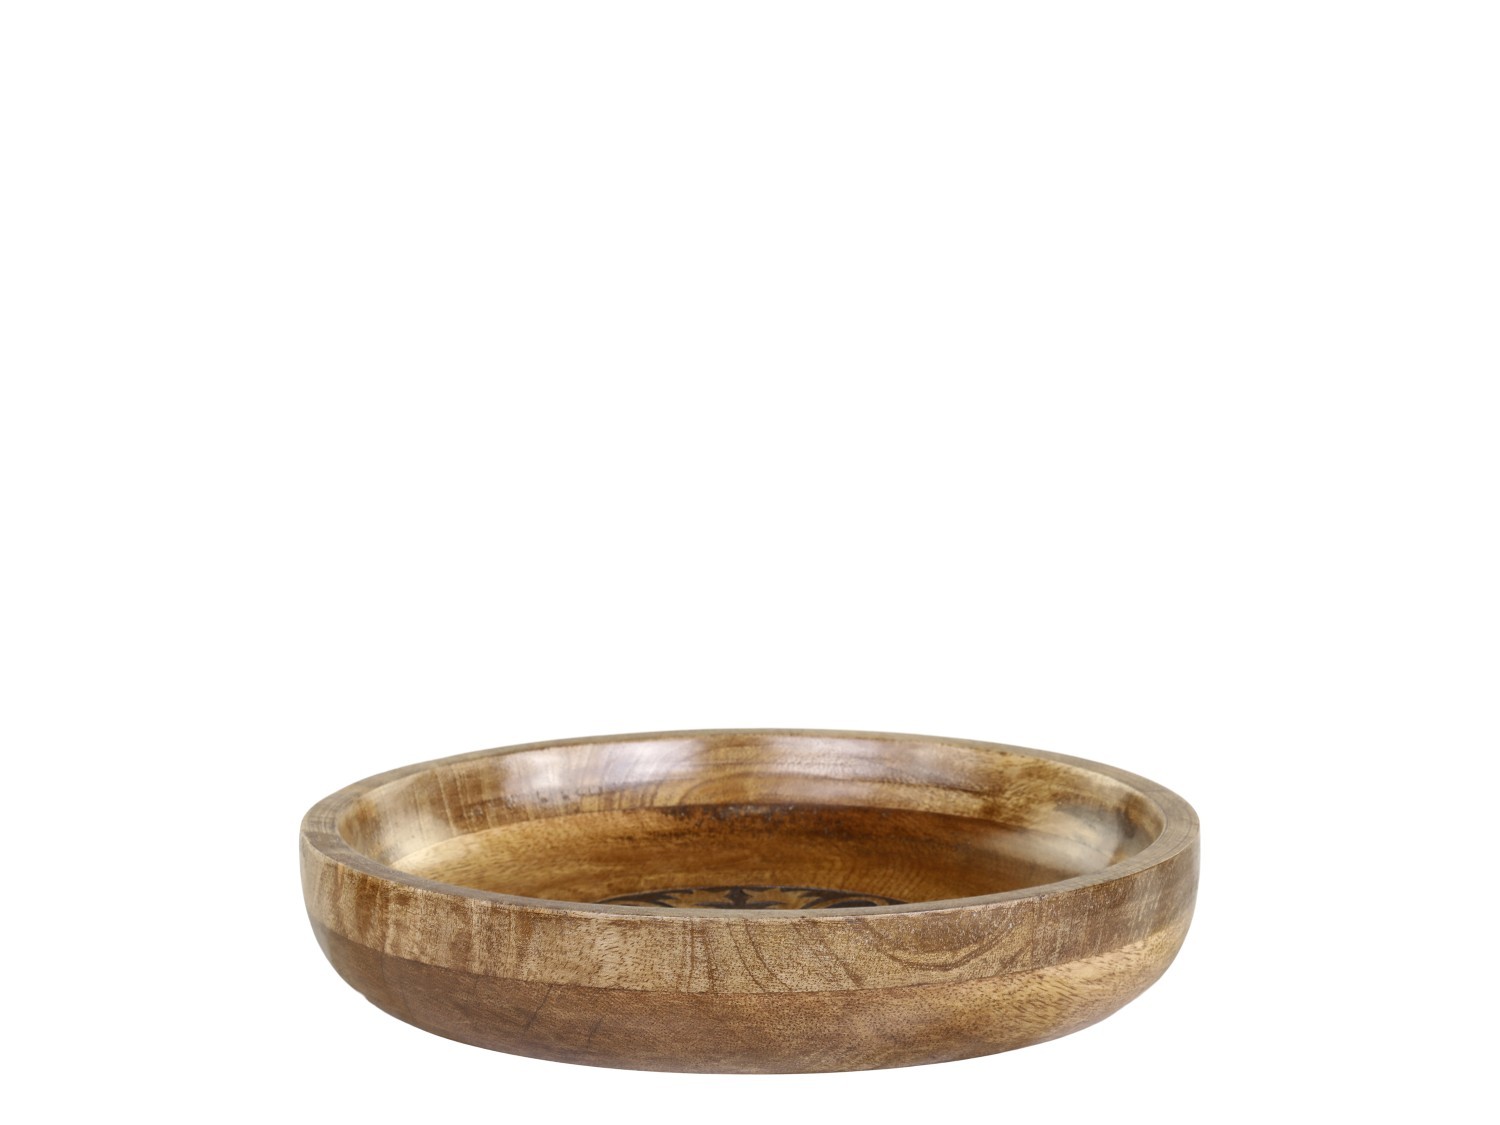 Dřevěná servírovací miska z mangového dřeva Tours Bowl - Ø 25*5 cm/ 1100ml Chic Antique